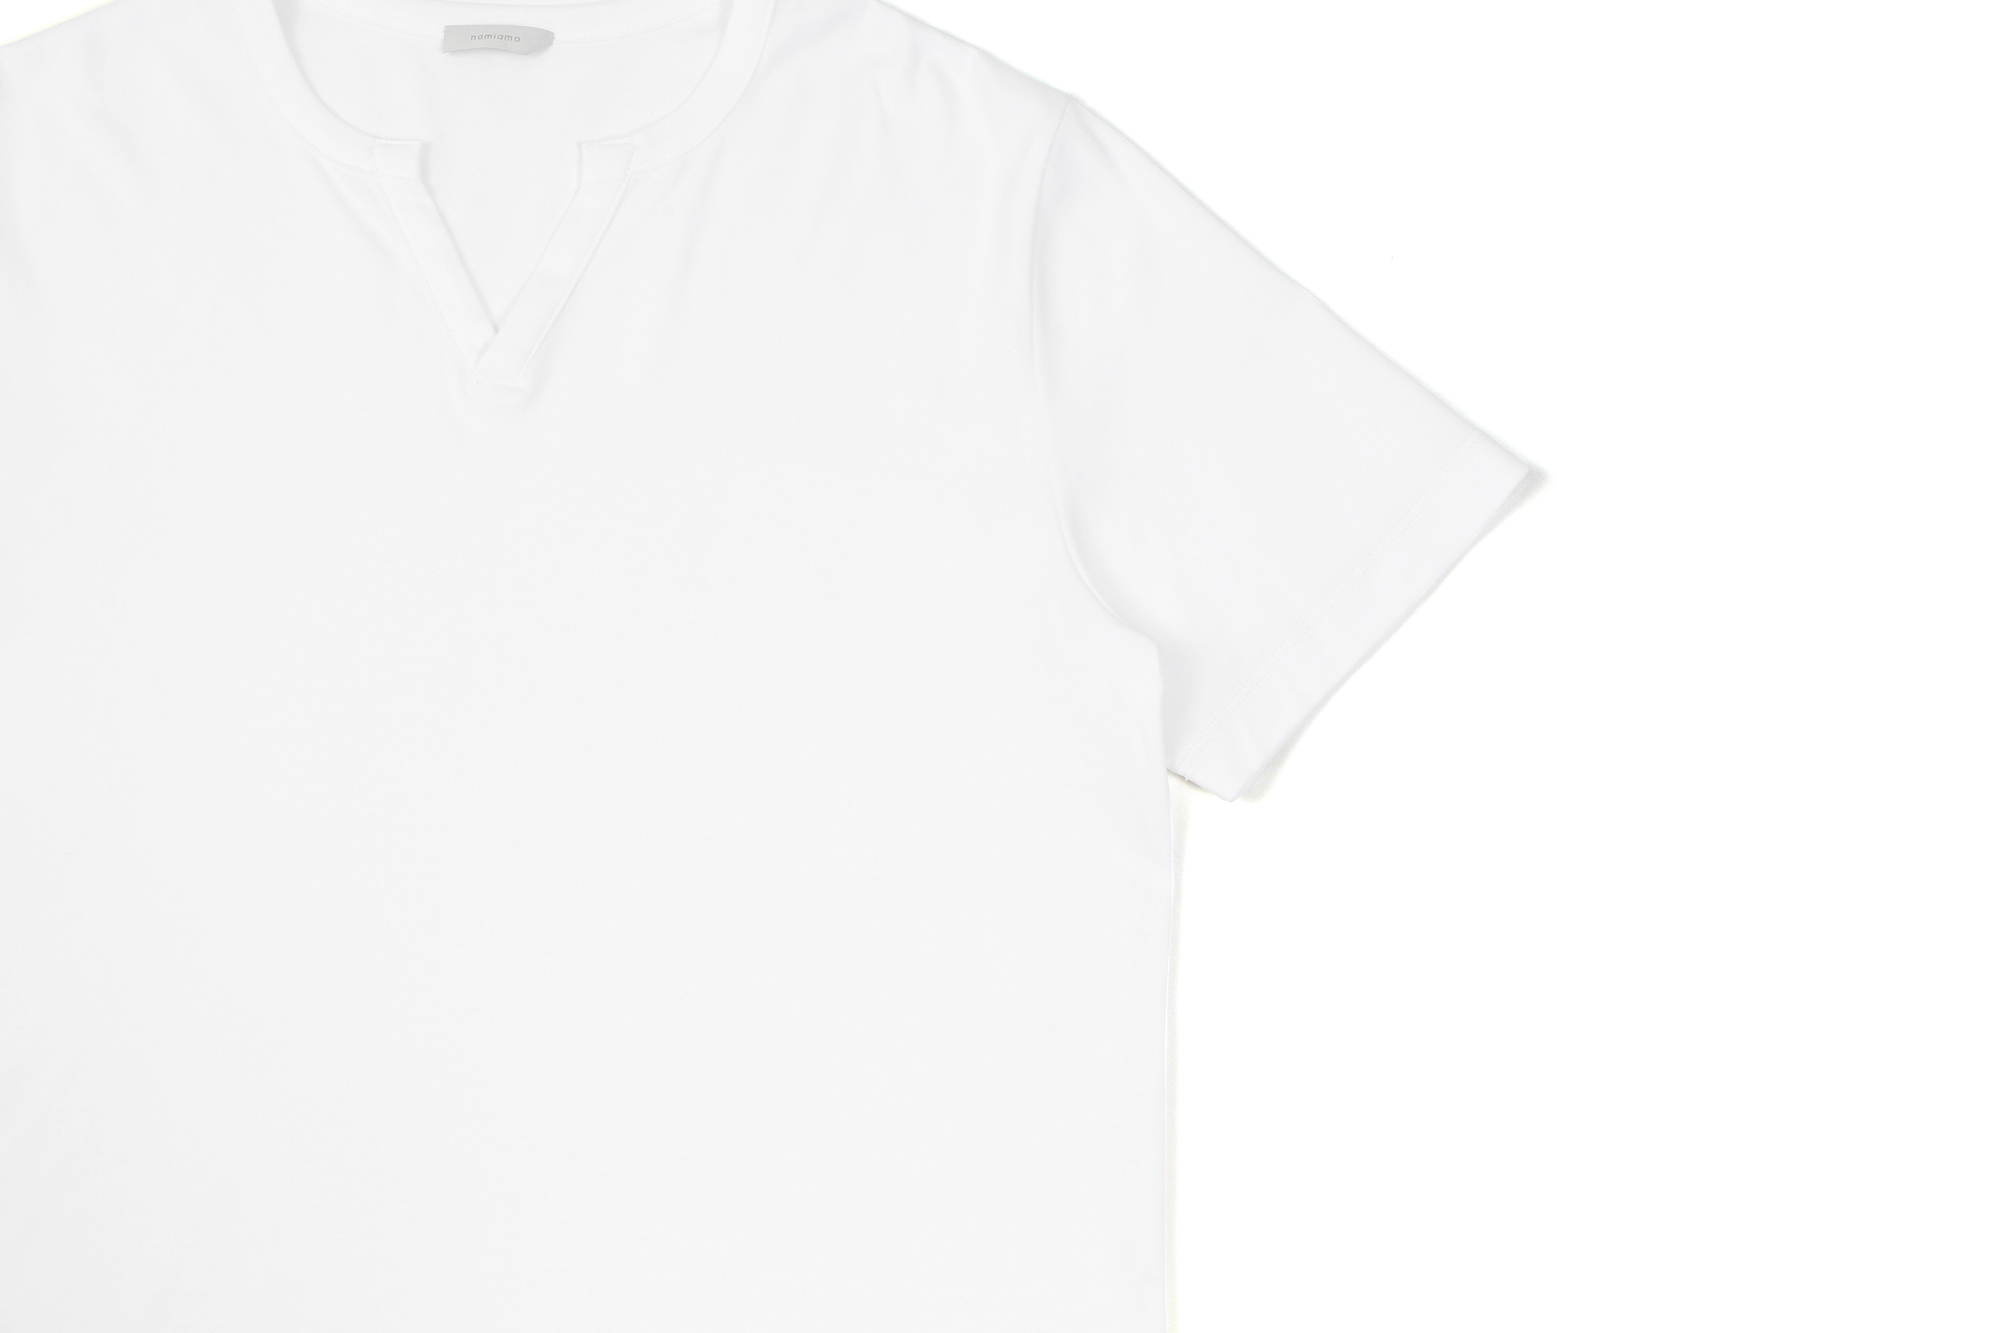 nomiamo (ノミアモ) SUPIMA 80/1 Key Neck T-shirt スーピマコットン キーネック Tシャツ WHITE (ホワイト) 2021 春夏 【Alto e Diritto別注】【Special限定モデル】【ご予約開始】愛知 名古屋 Altoediritto アルトエデリット カットソー 半袖Tシャツ